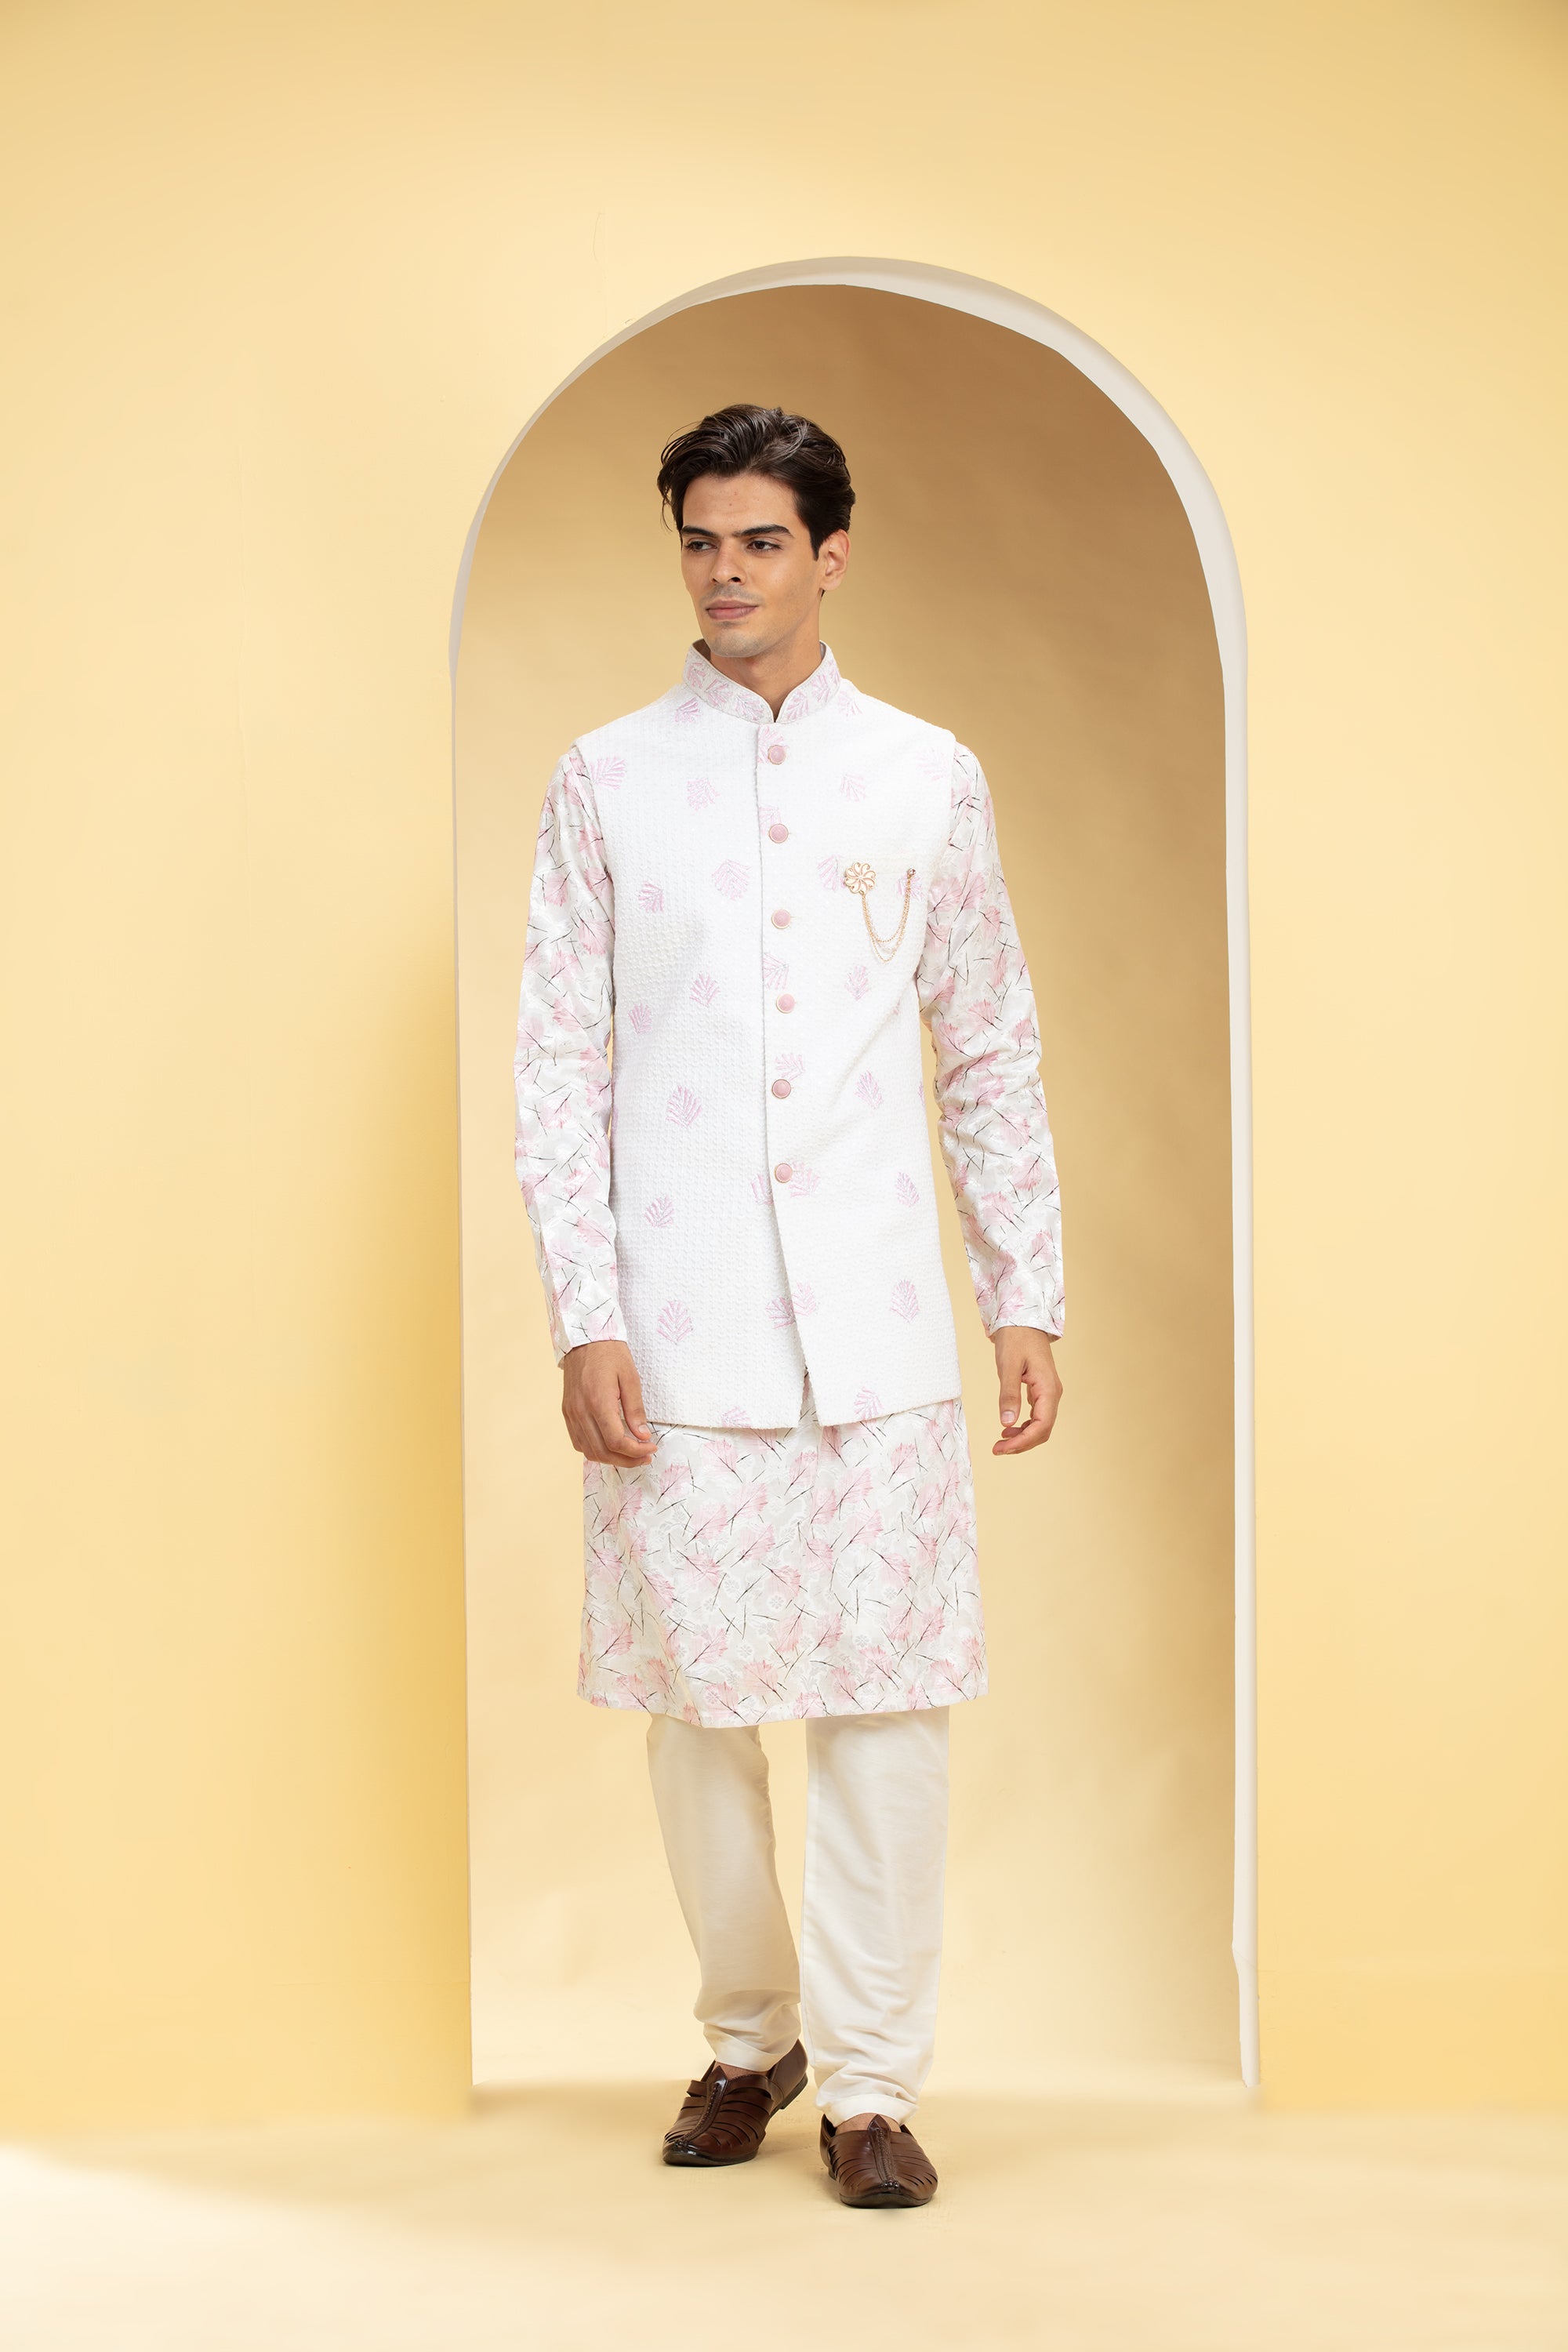 Buy Pearl White Kurta Jacket With Printed Motifs Online in India @Manyavar  - Kurta Pajama for Men